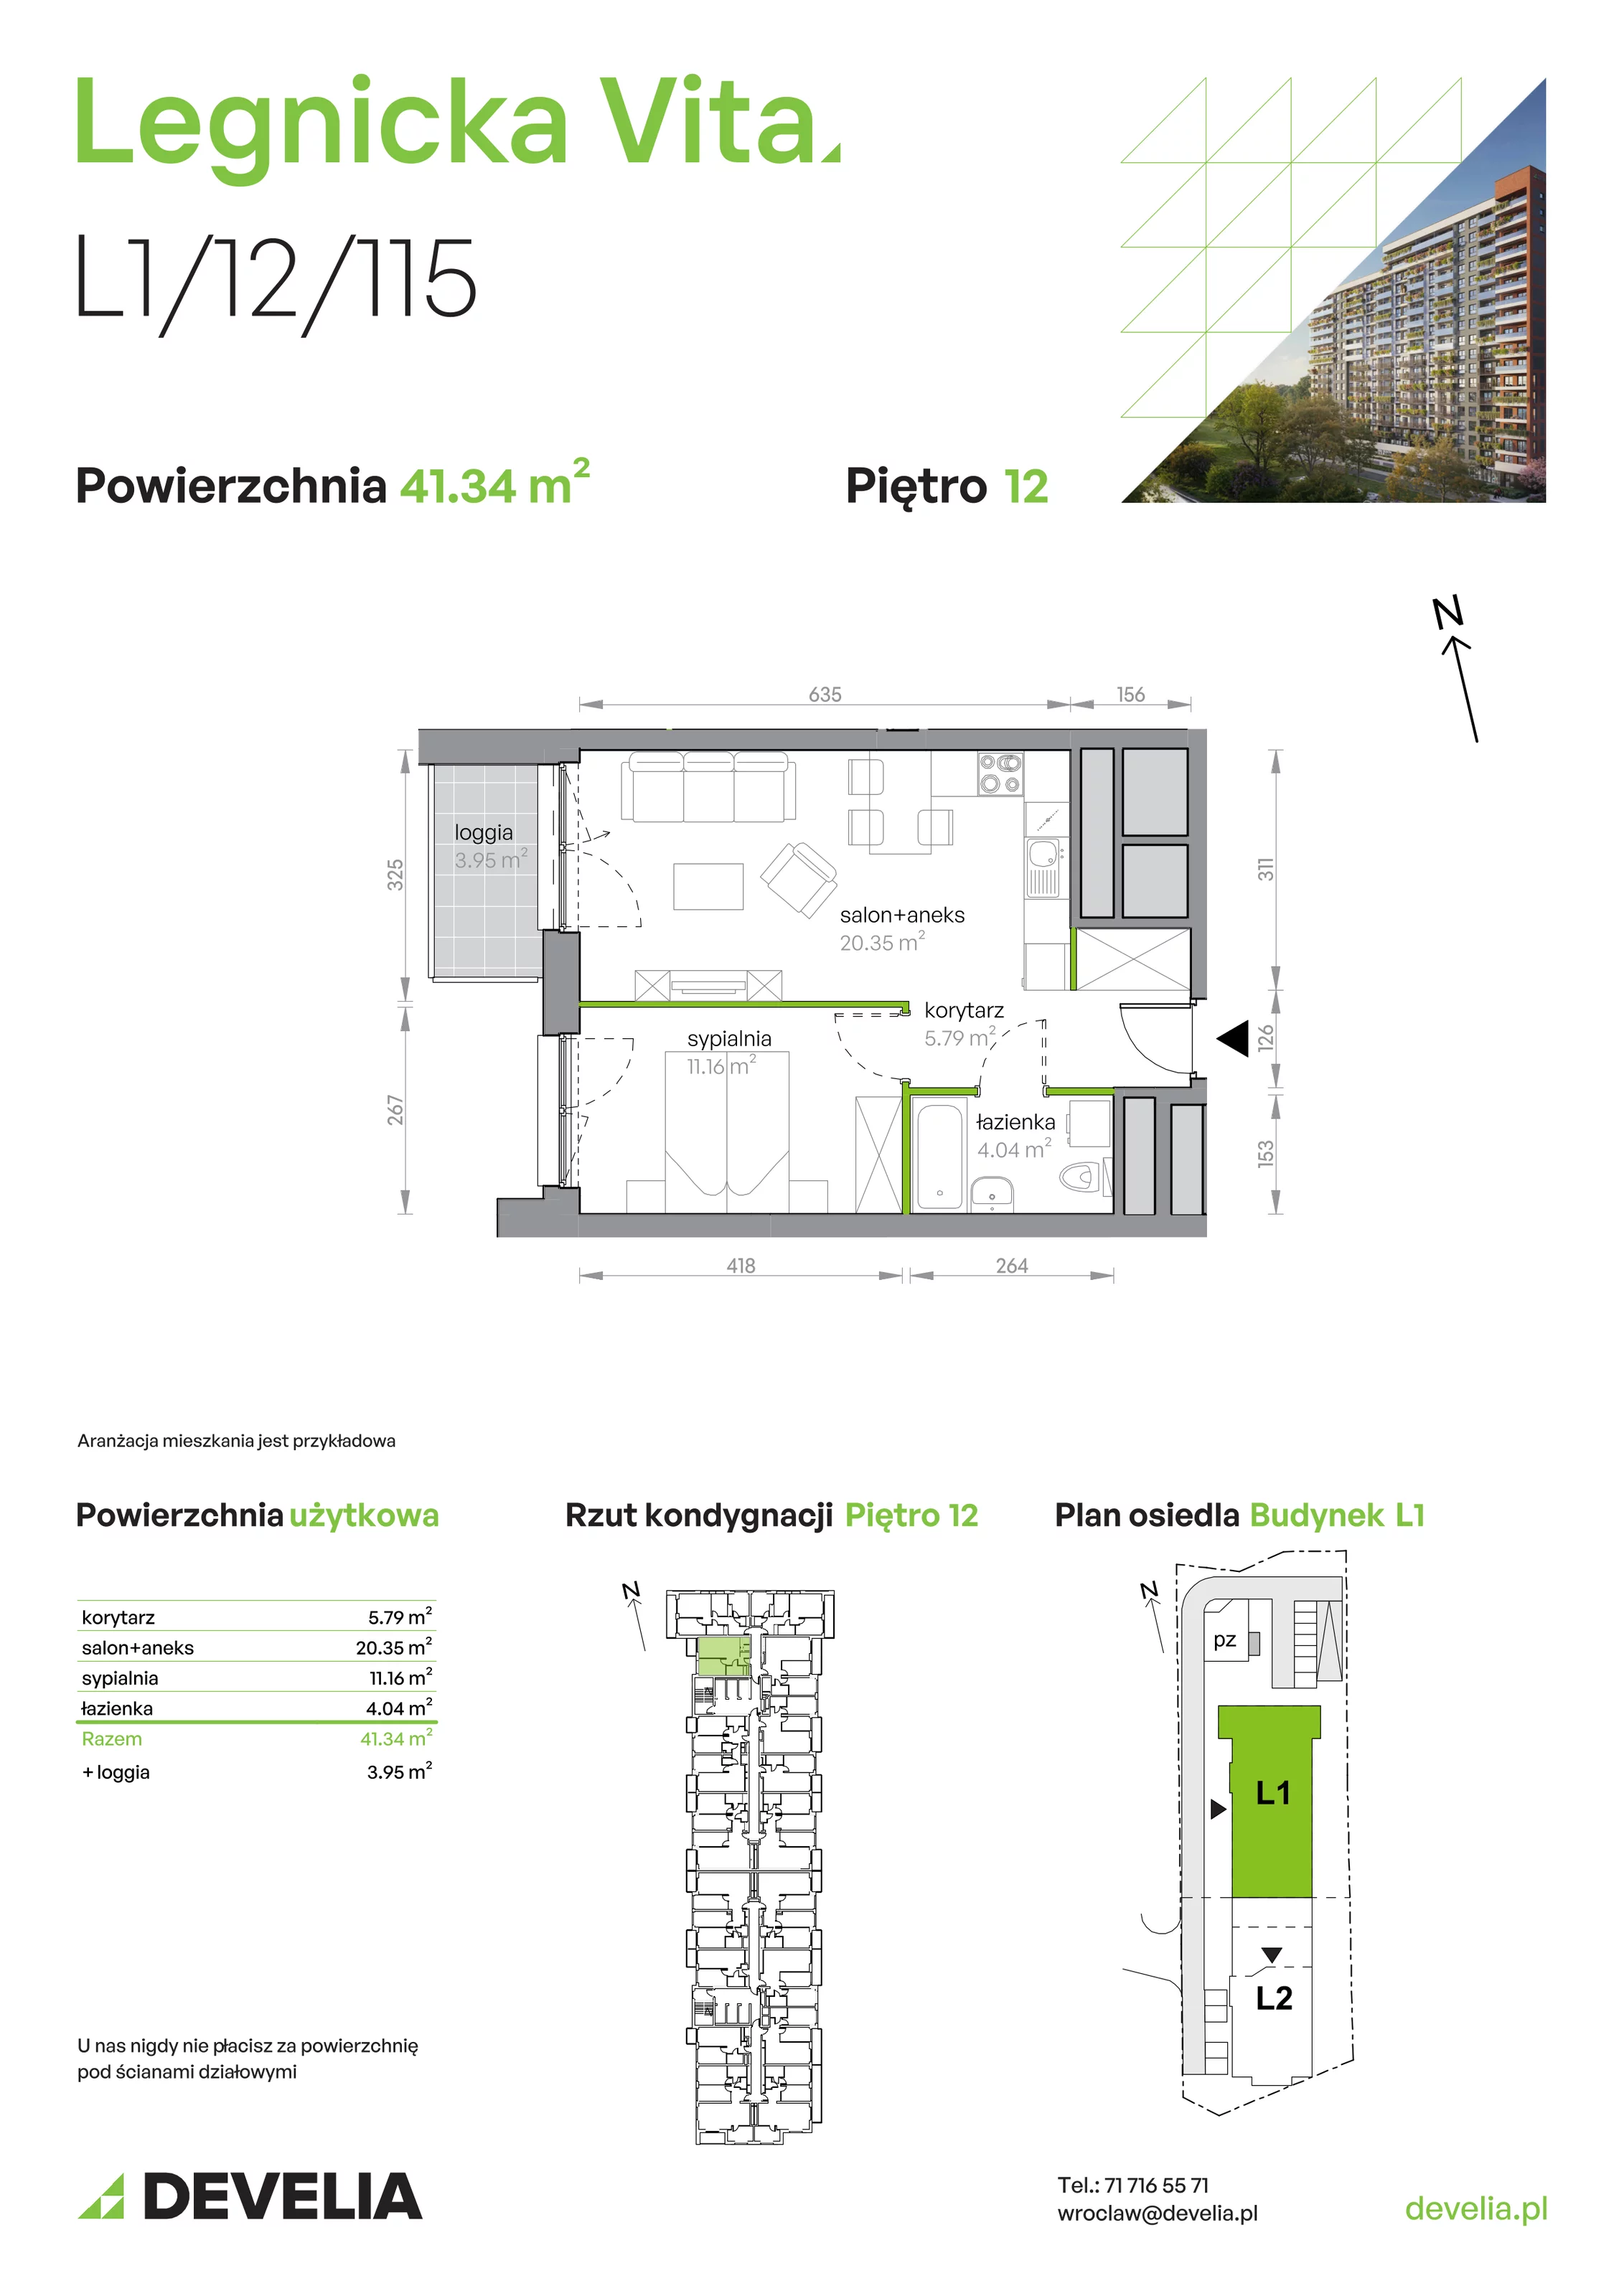 Mieszkanie 41,34 m², piętro 12, oferta nr L1/12/115, Legnicka Vita, Wrocław, Gądów-Popowice Południowe, Popowice, ul. Legnicka 52 A